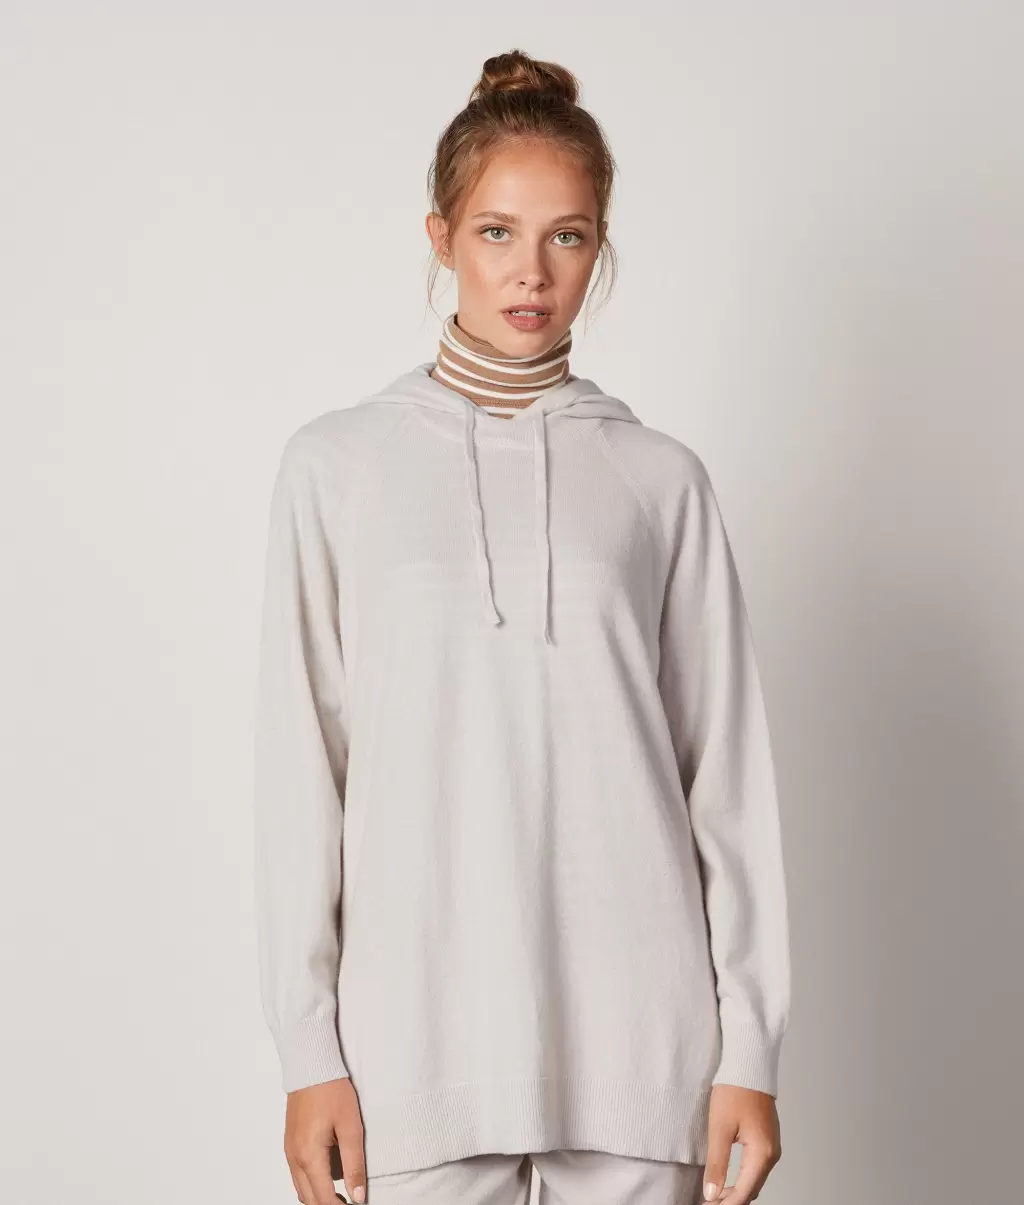 Falconeri Swetry Z Okrągłym Dekoltem Długa Bluza Z Kapturem Z Kaszmiru Ultrasoft White_Avorio Kobieta - 1